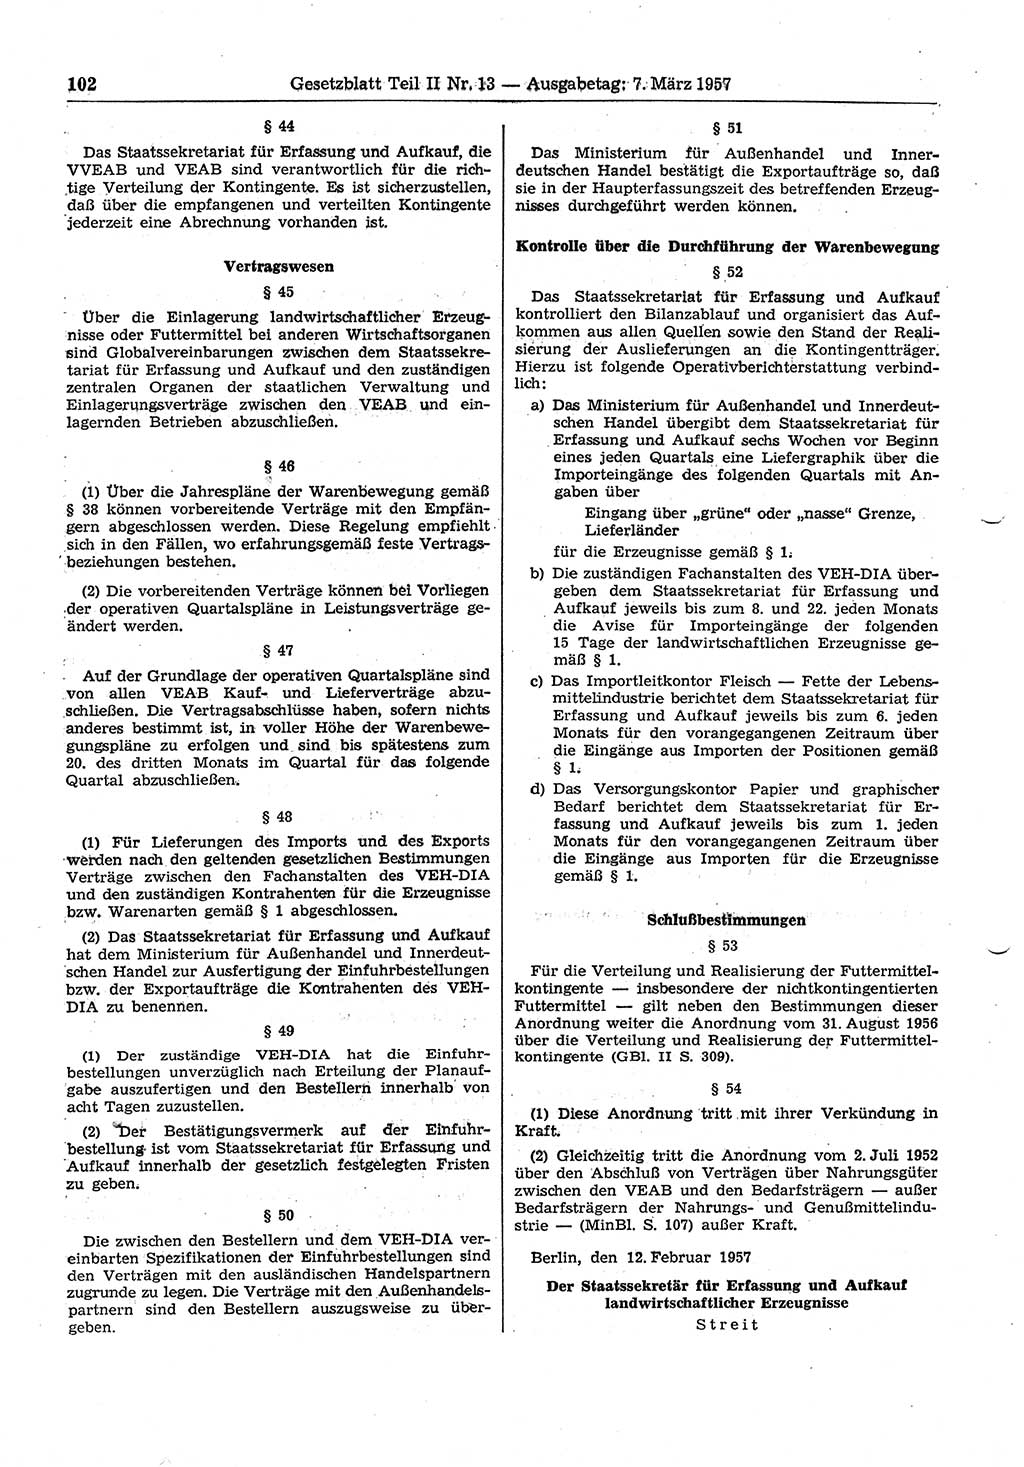 Gesetzblatt (GBl.) der Deutschen Demokratischen Republik (DDR) Teil ⅠⅠ 1957, Seite 102 (GBl. DDR ⅠⅠ 1957, S. 102)